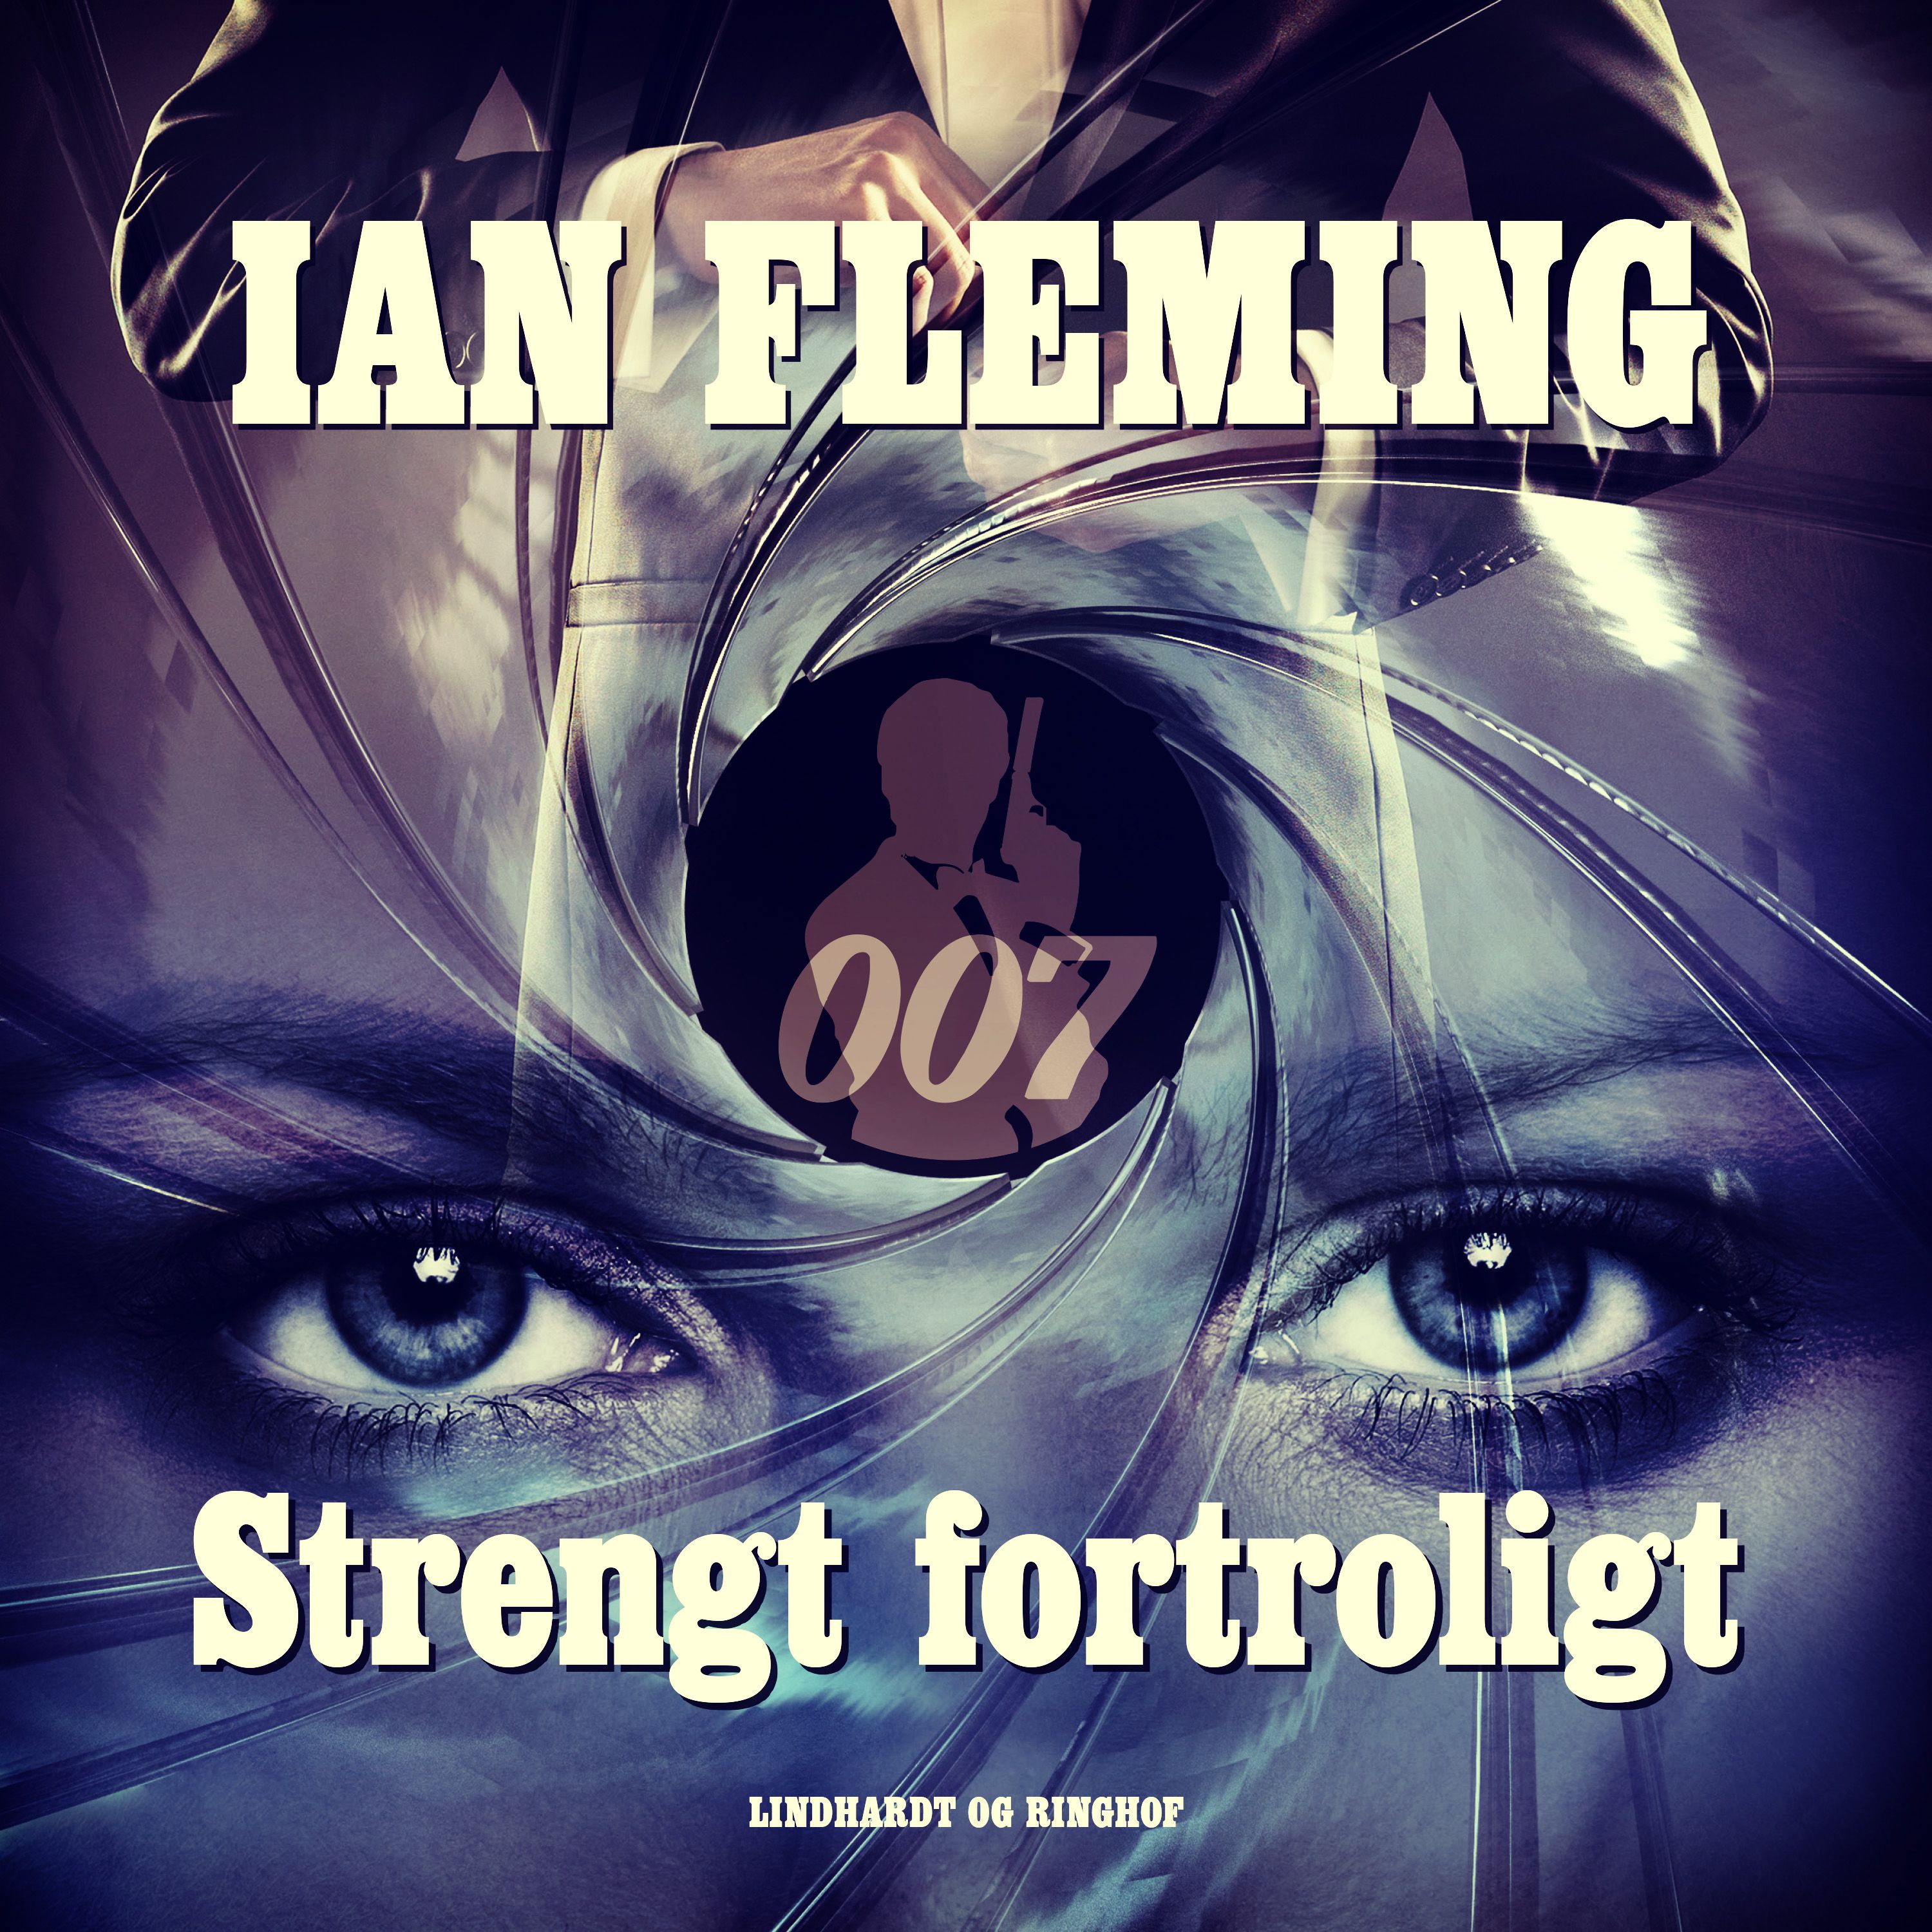 Strengt fortroligt, lydbog af Ian Fleming